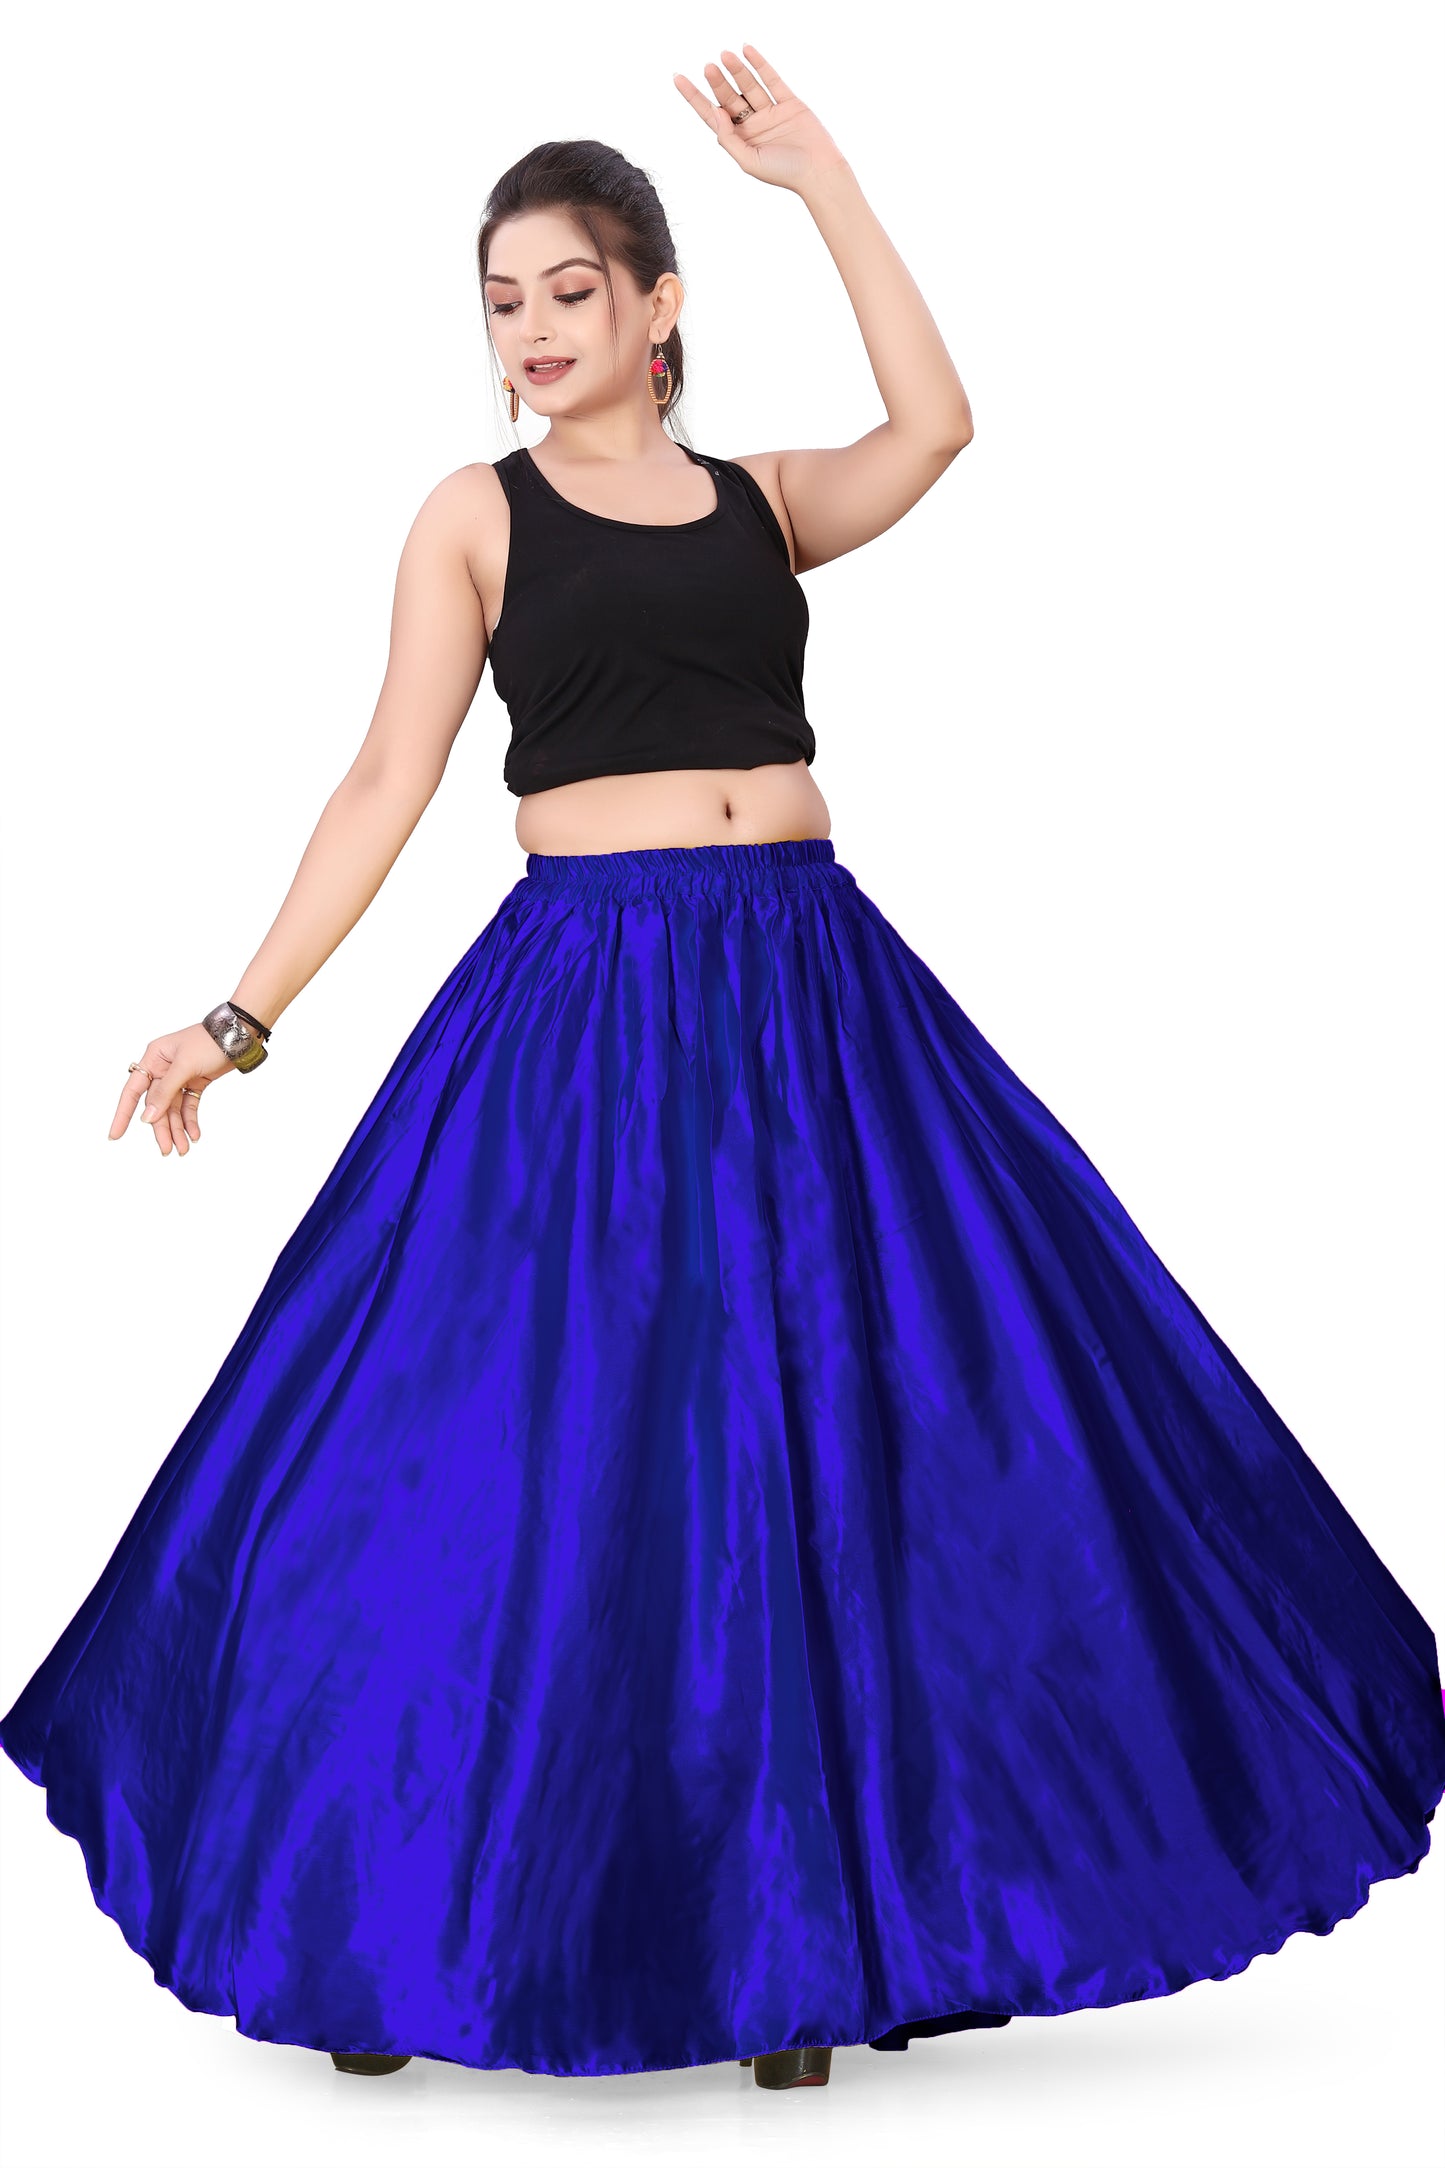 Satin Belly Dance Full Circle Skirt S8-Regular Size 3